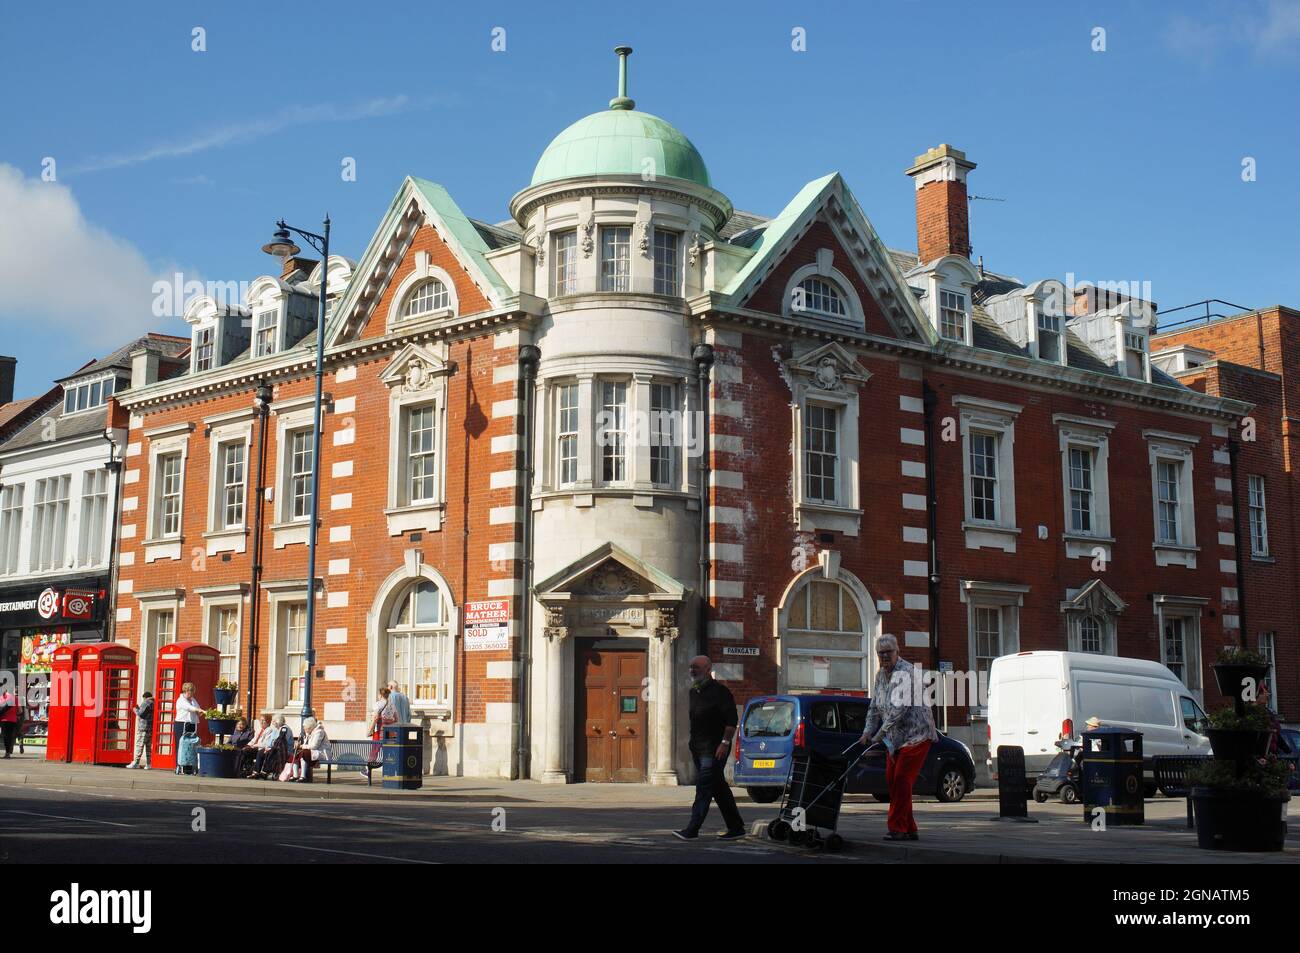 L'ancien bureau de poste sur le large Bargate construit dans le style de la reine Anne et un bâtiment classé en Angleterre Banque D'Images